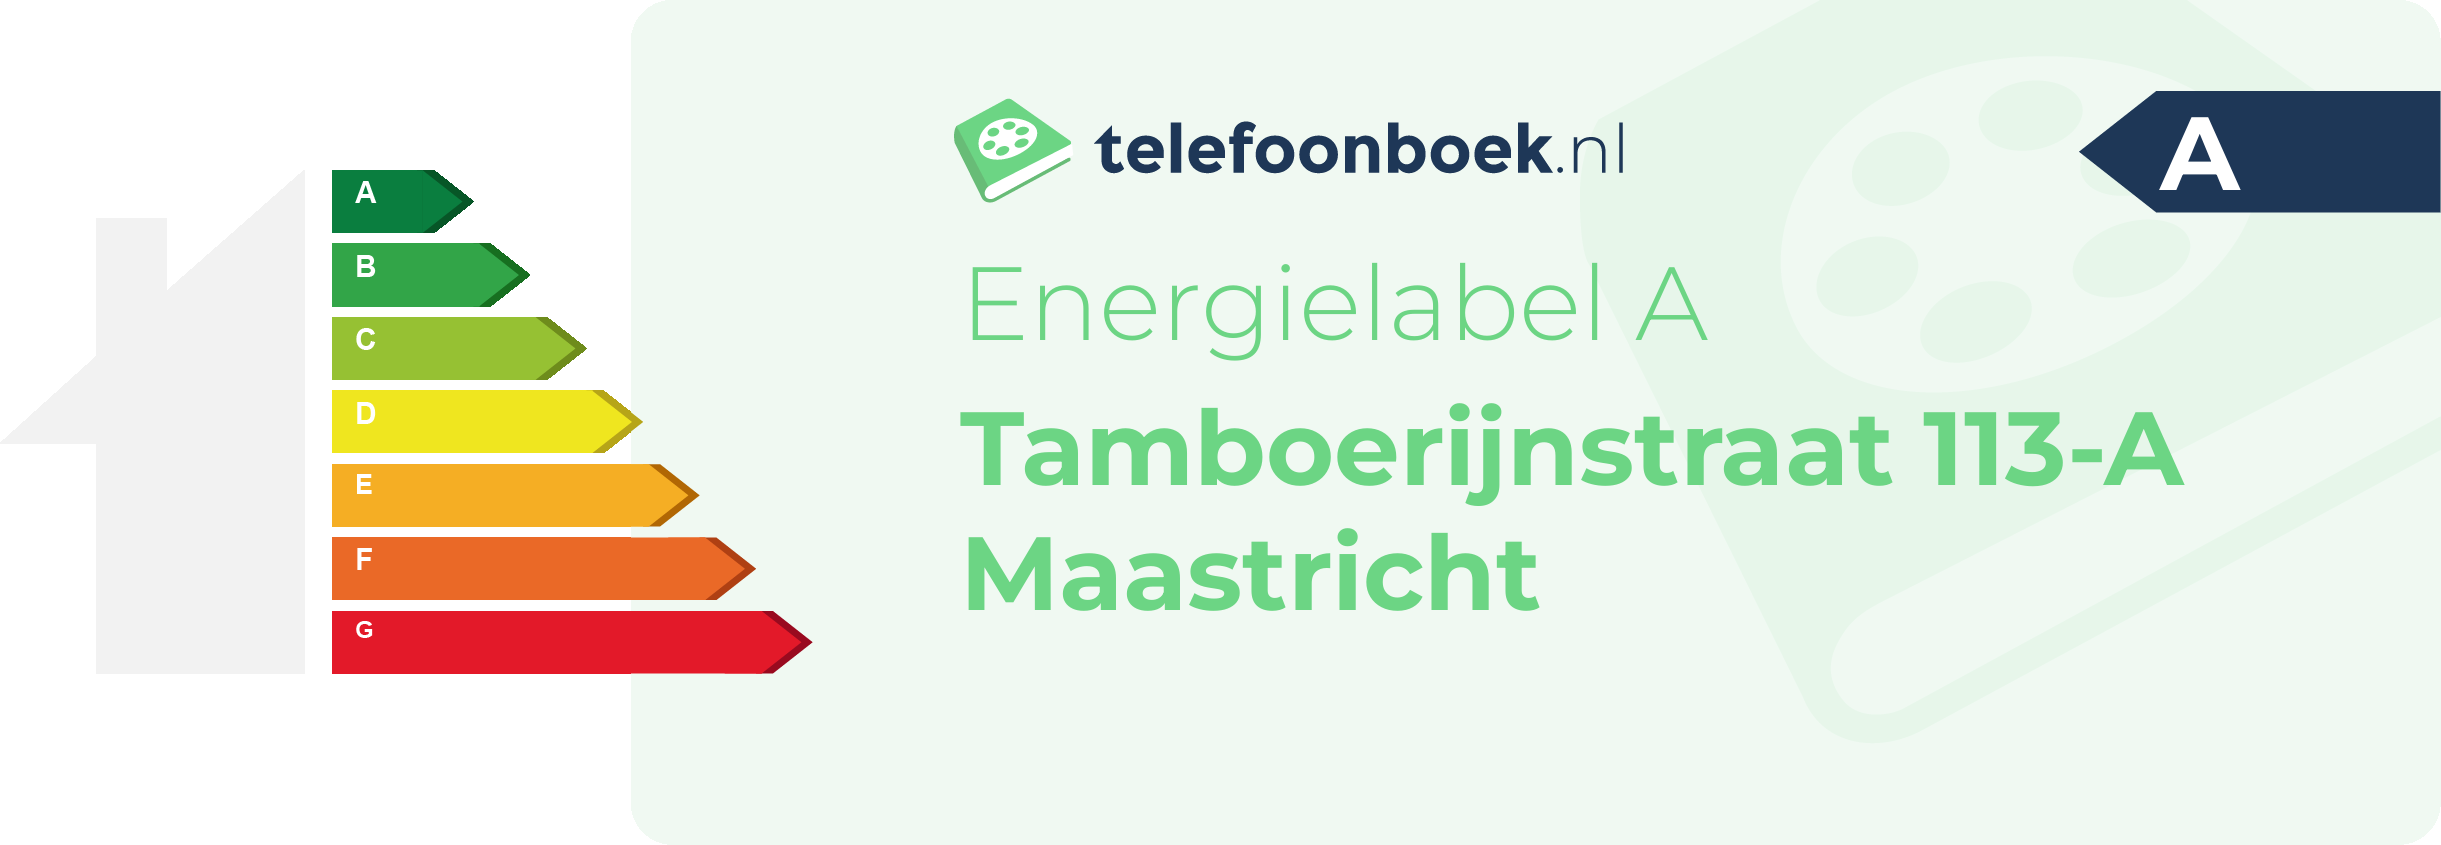 Energielabel Tamboerijnstraat 113-A Maastricht